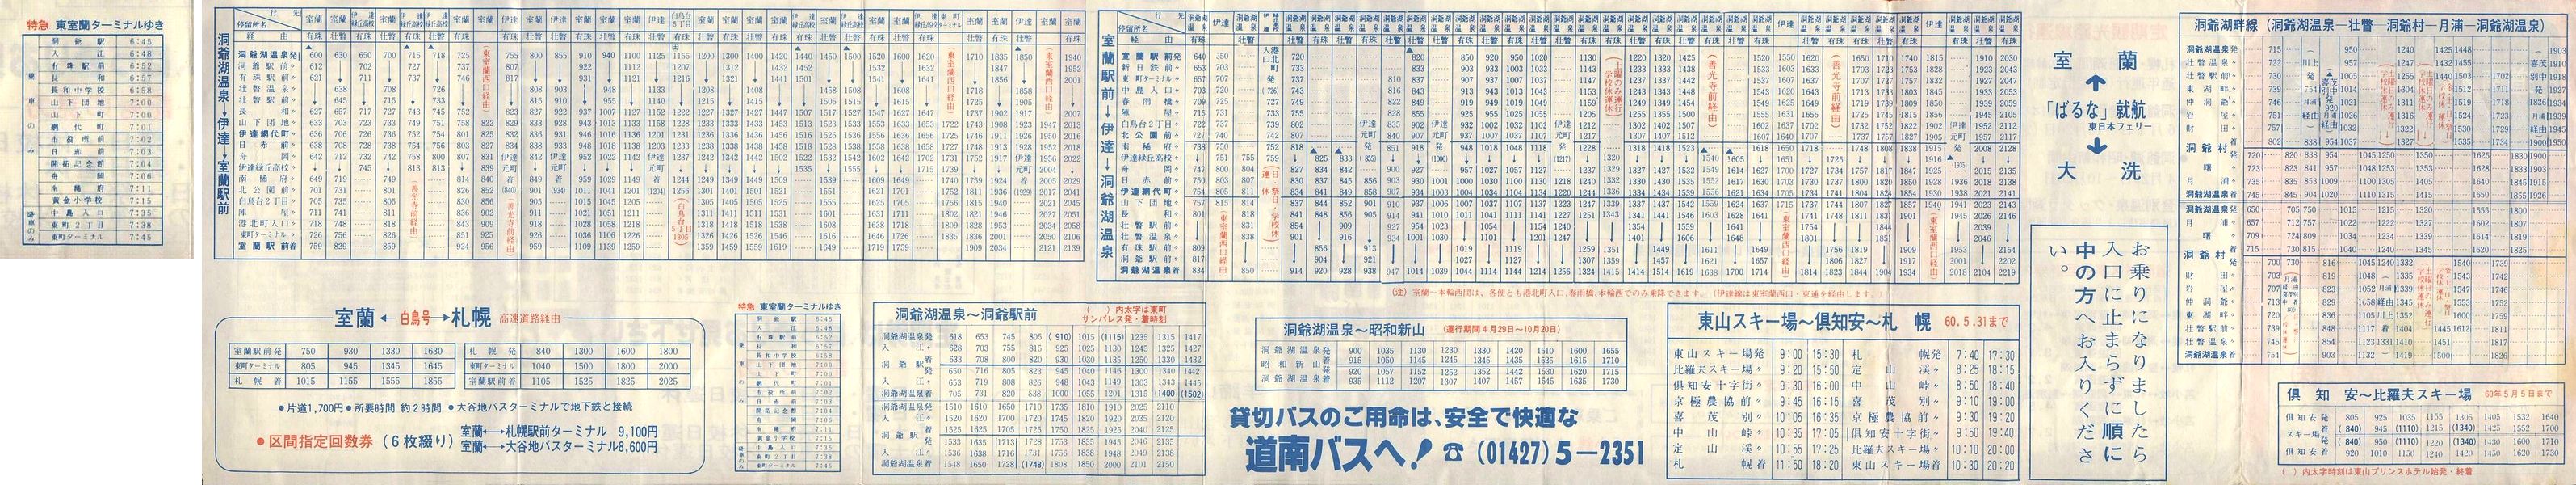 1985-04-01改正_道南バス_洞爺管内時刻表裏面